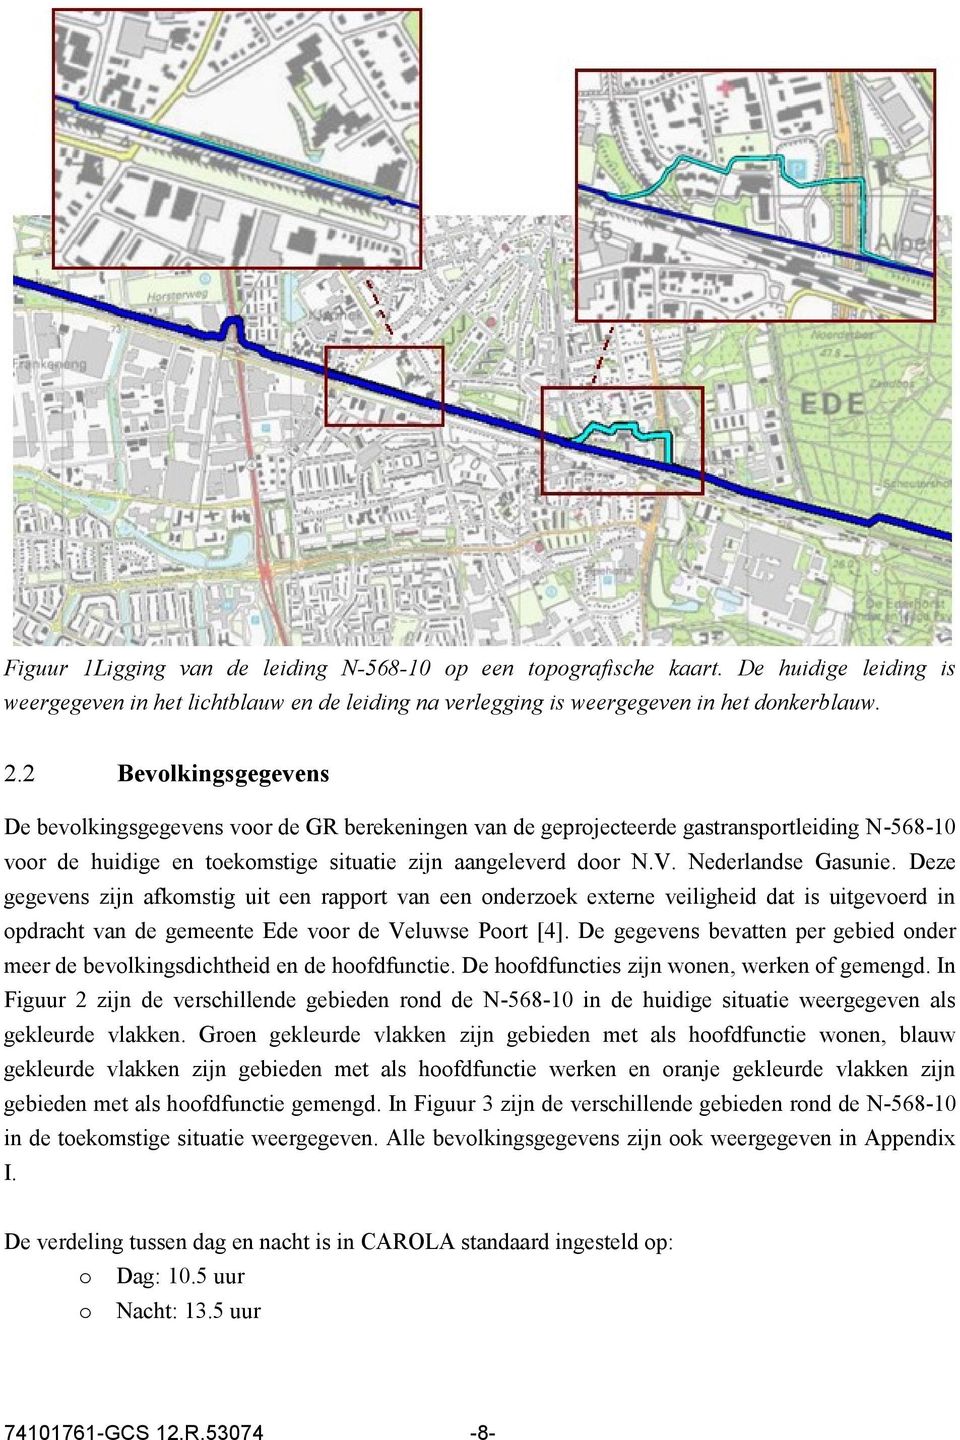 Nederlandse Gasunie. Deze gegevens zijn afkomstig uit een rapport van een onderzoek externe veiligheid dat is uitgevoerd in opdracht van de gemeente Ede voor de Veluwse Poort [4].